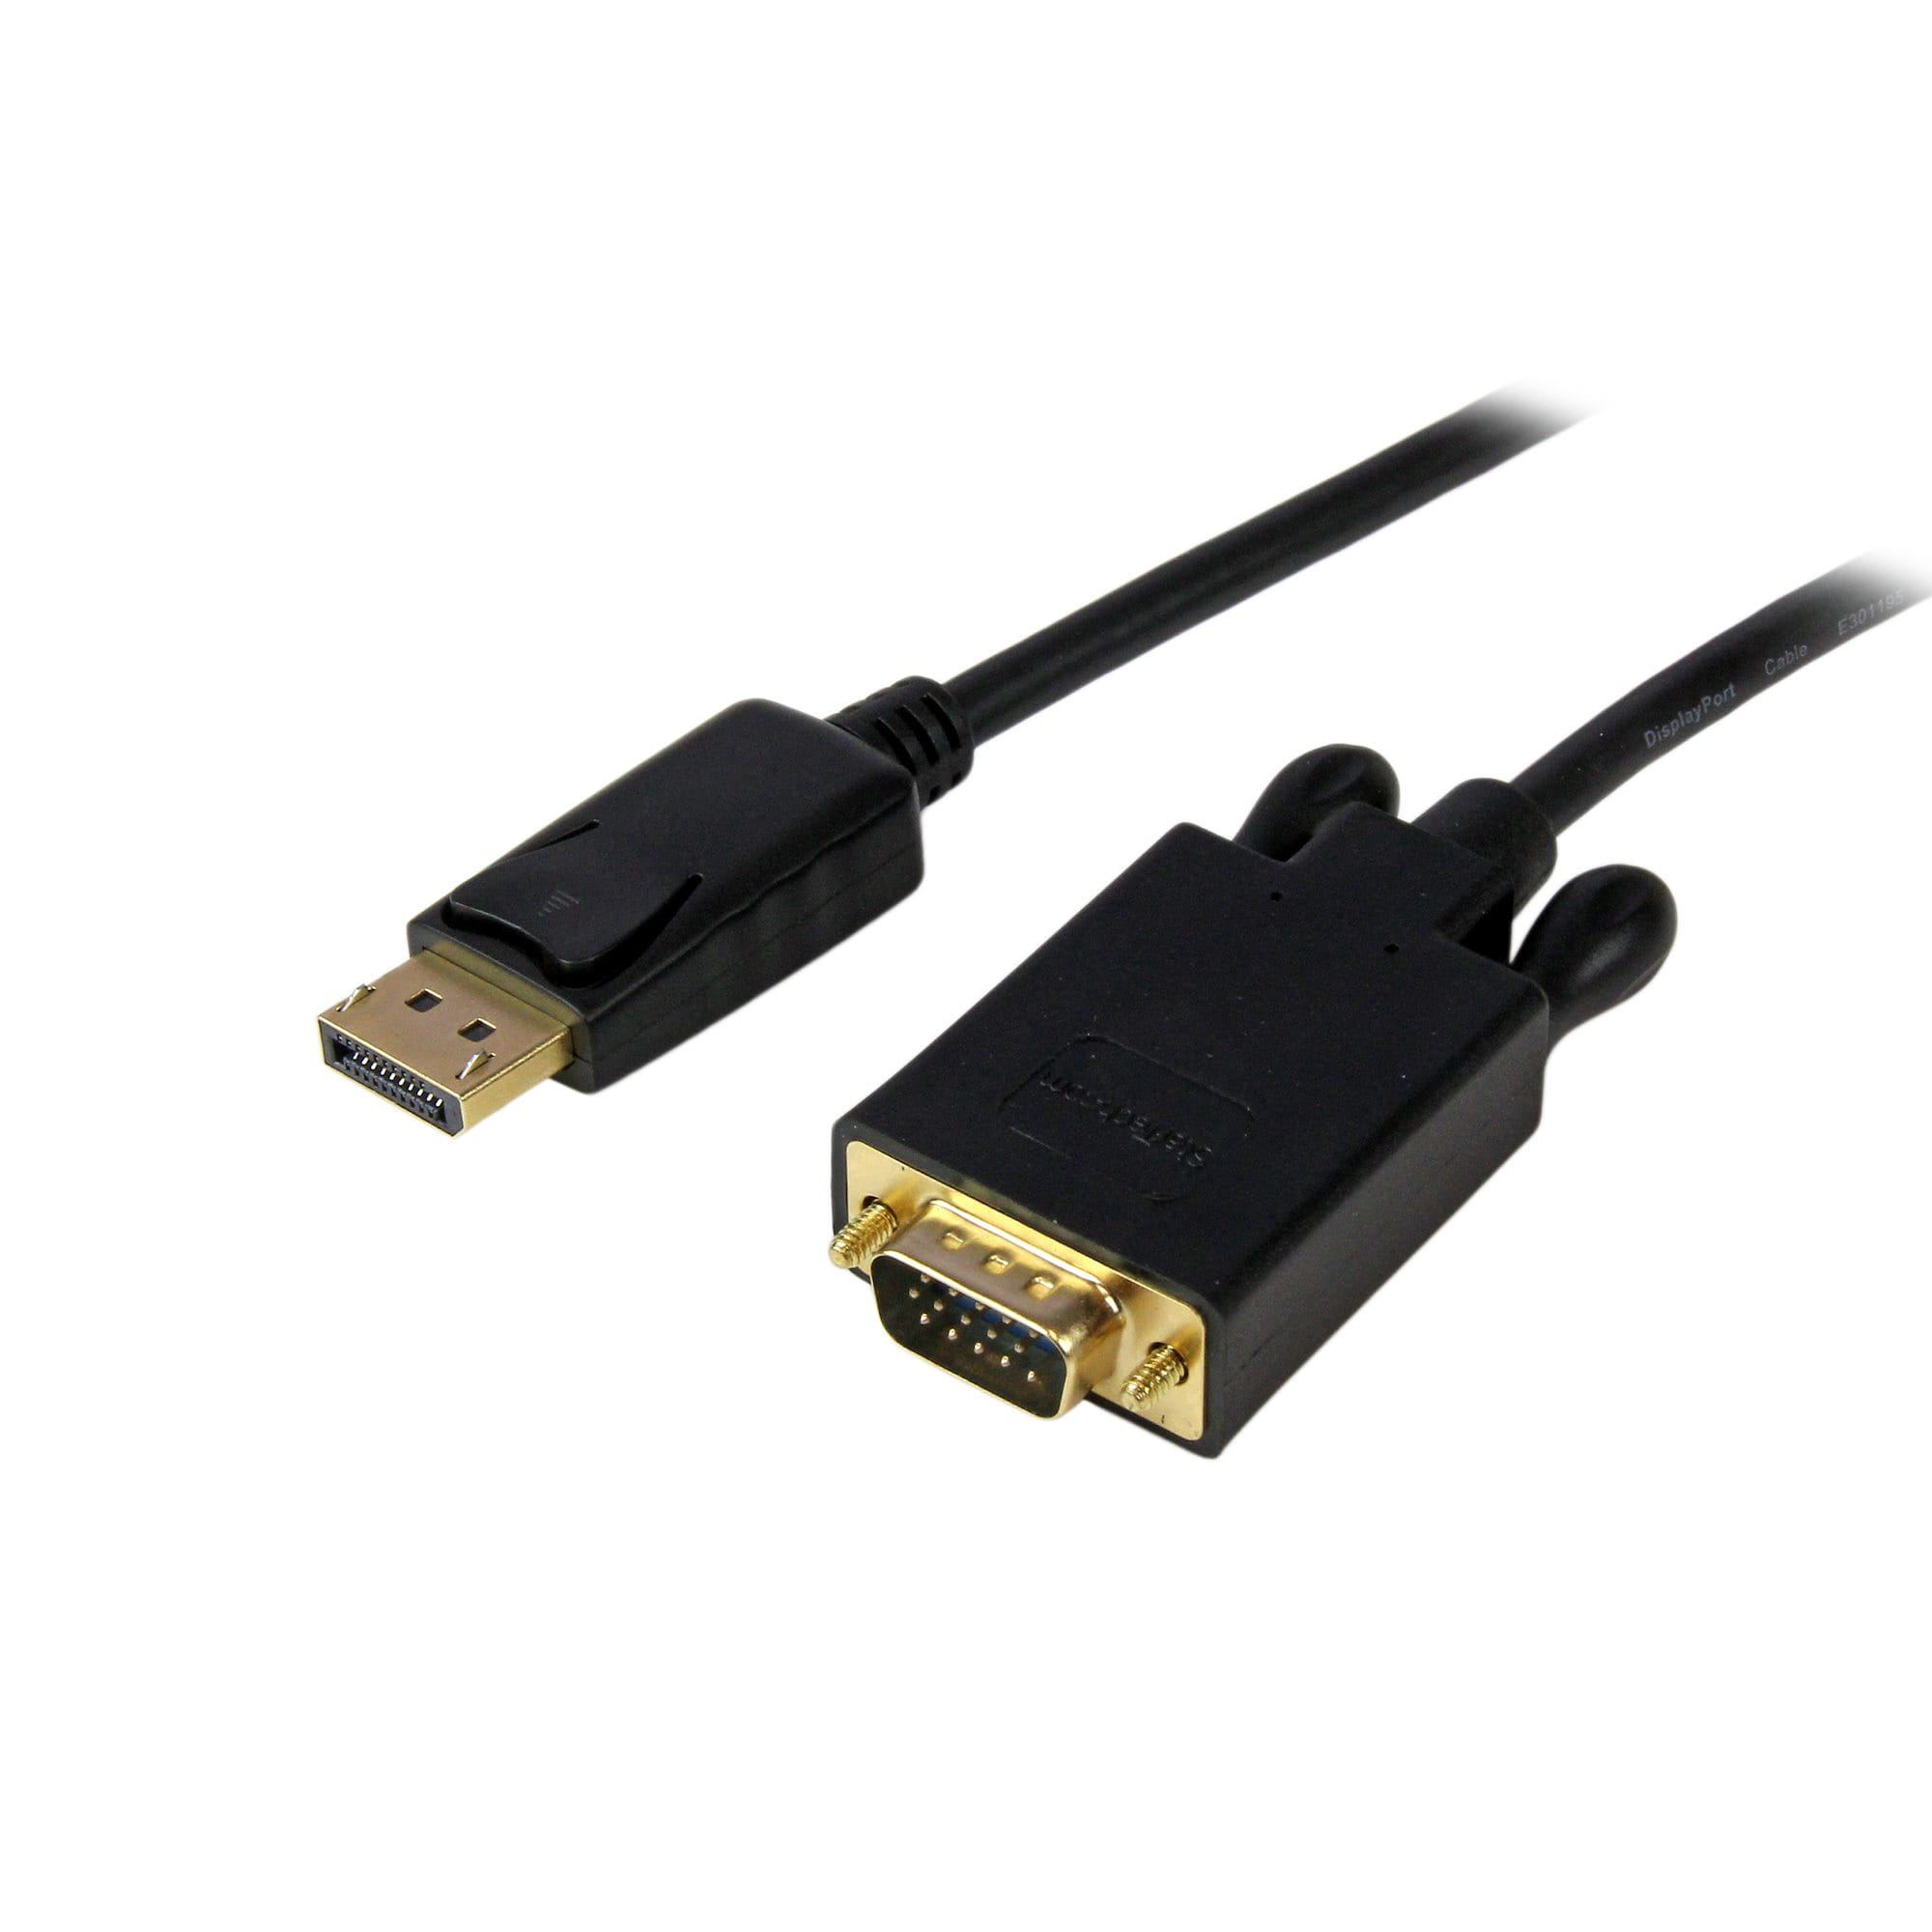 StarTech.com 1,8 m DisplayPort auf VGA Kabel - Aktives DisplayPort auf VGA Adapter Kabel - 1080p Video - DP auf VGA Monitor Kabel - DP 1.2 auf VGA Konverter - Einrastender DP Stecker (DP2VGAMM6B)